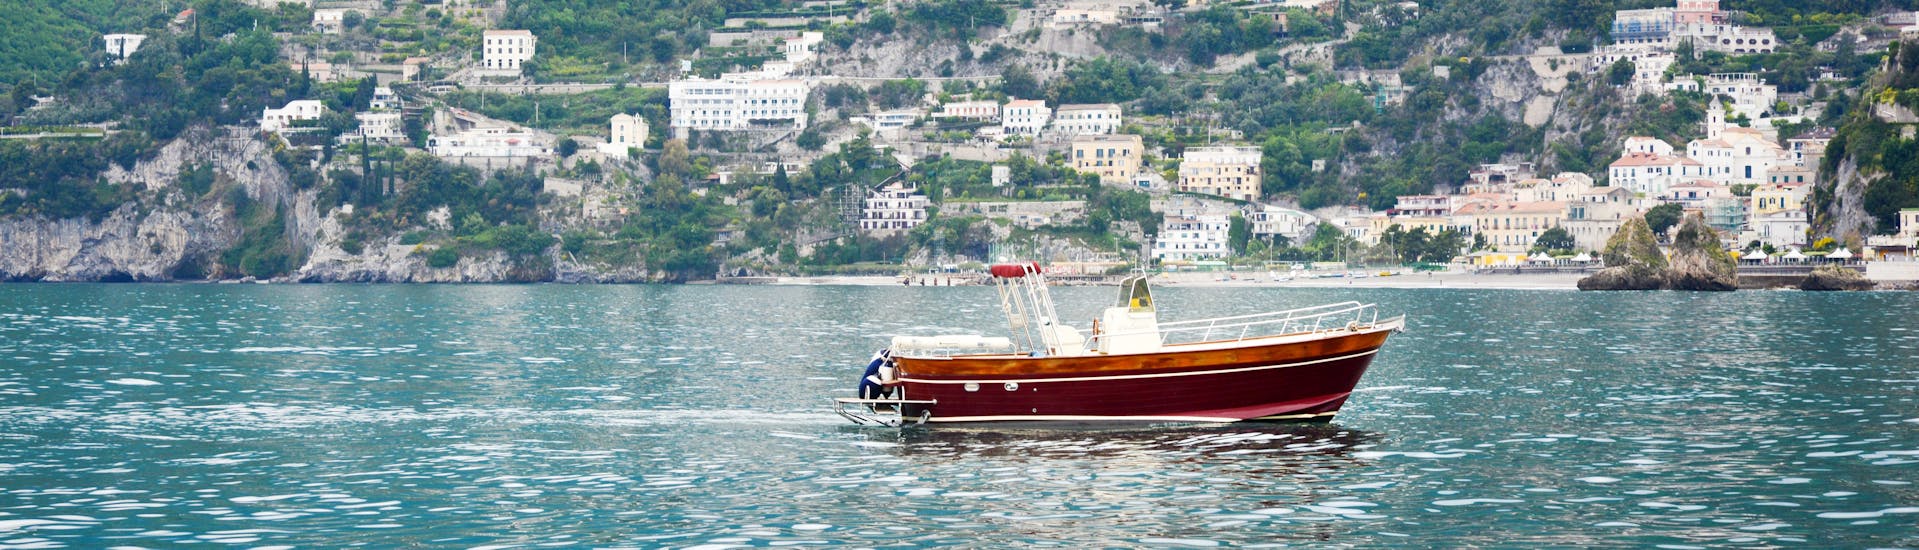 Das Boot von Blu Mediterraneo Amalfiküste während der privaten Bootstour von Salerno zur Insel Capri.